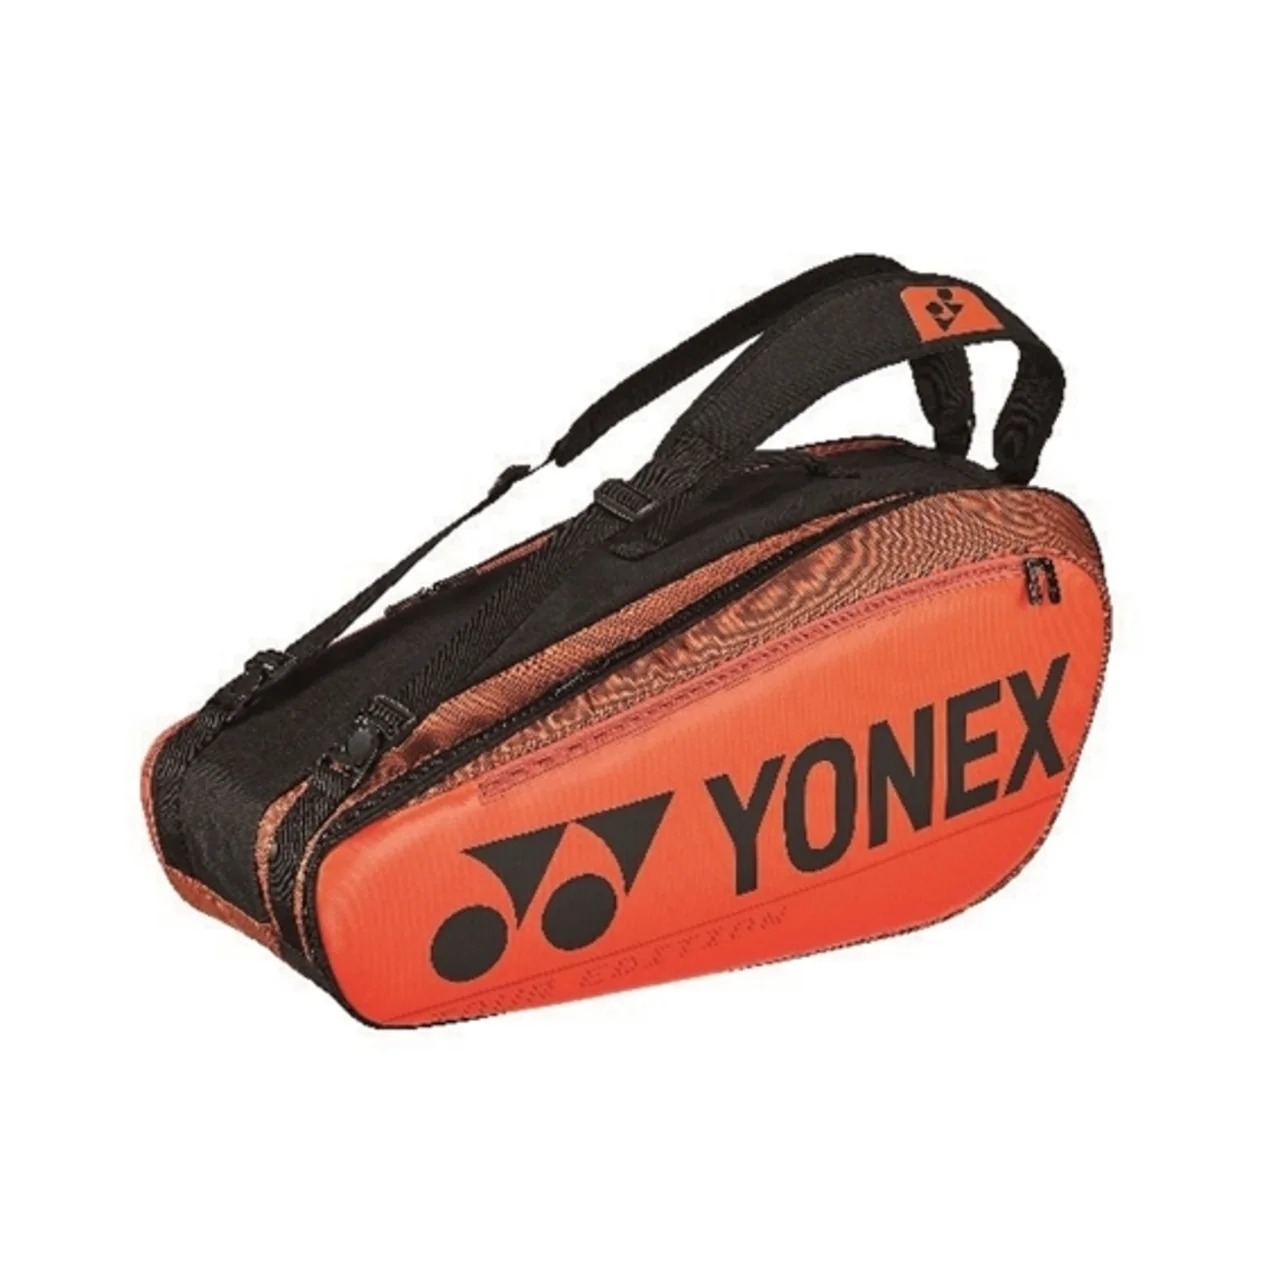 Yonex Pro Bag x6 Copper Orange